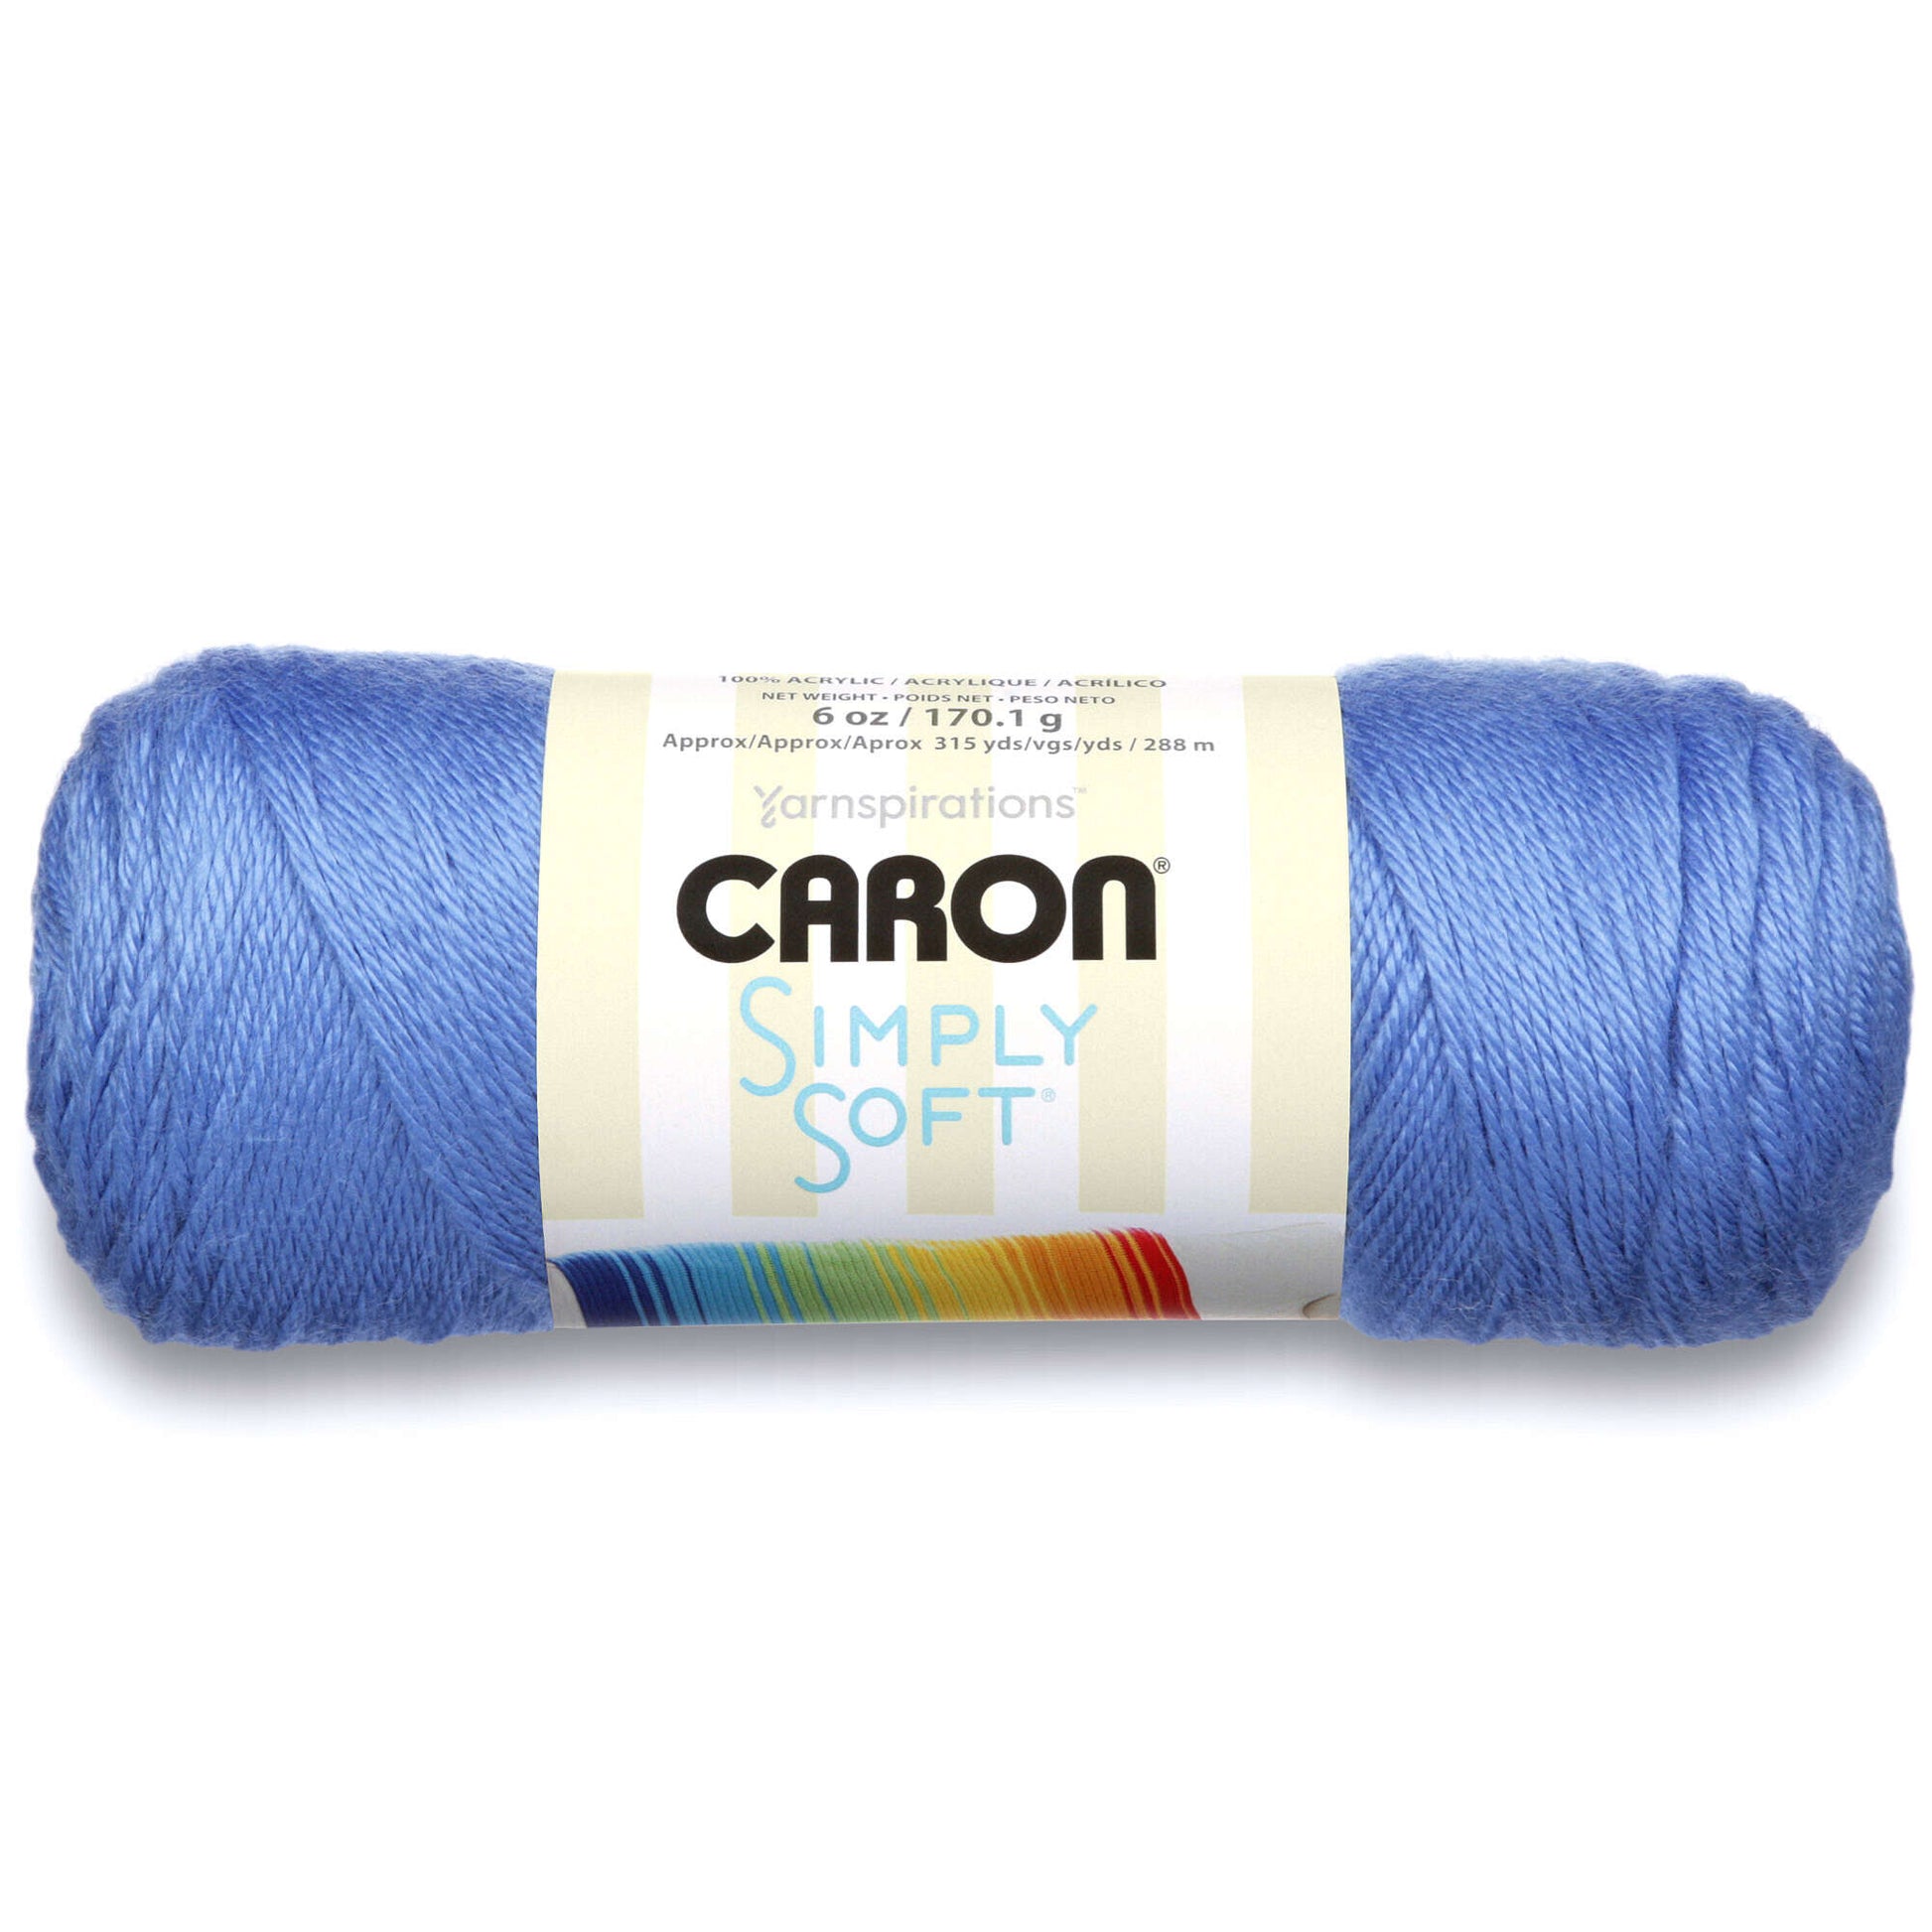 Caron Simply Soft Brites Yarn